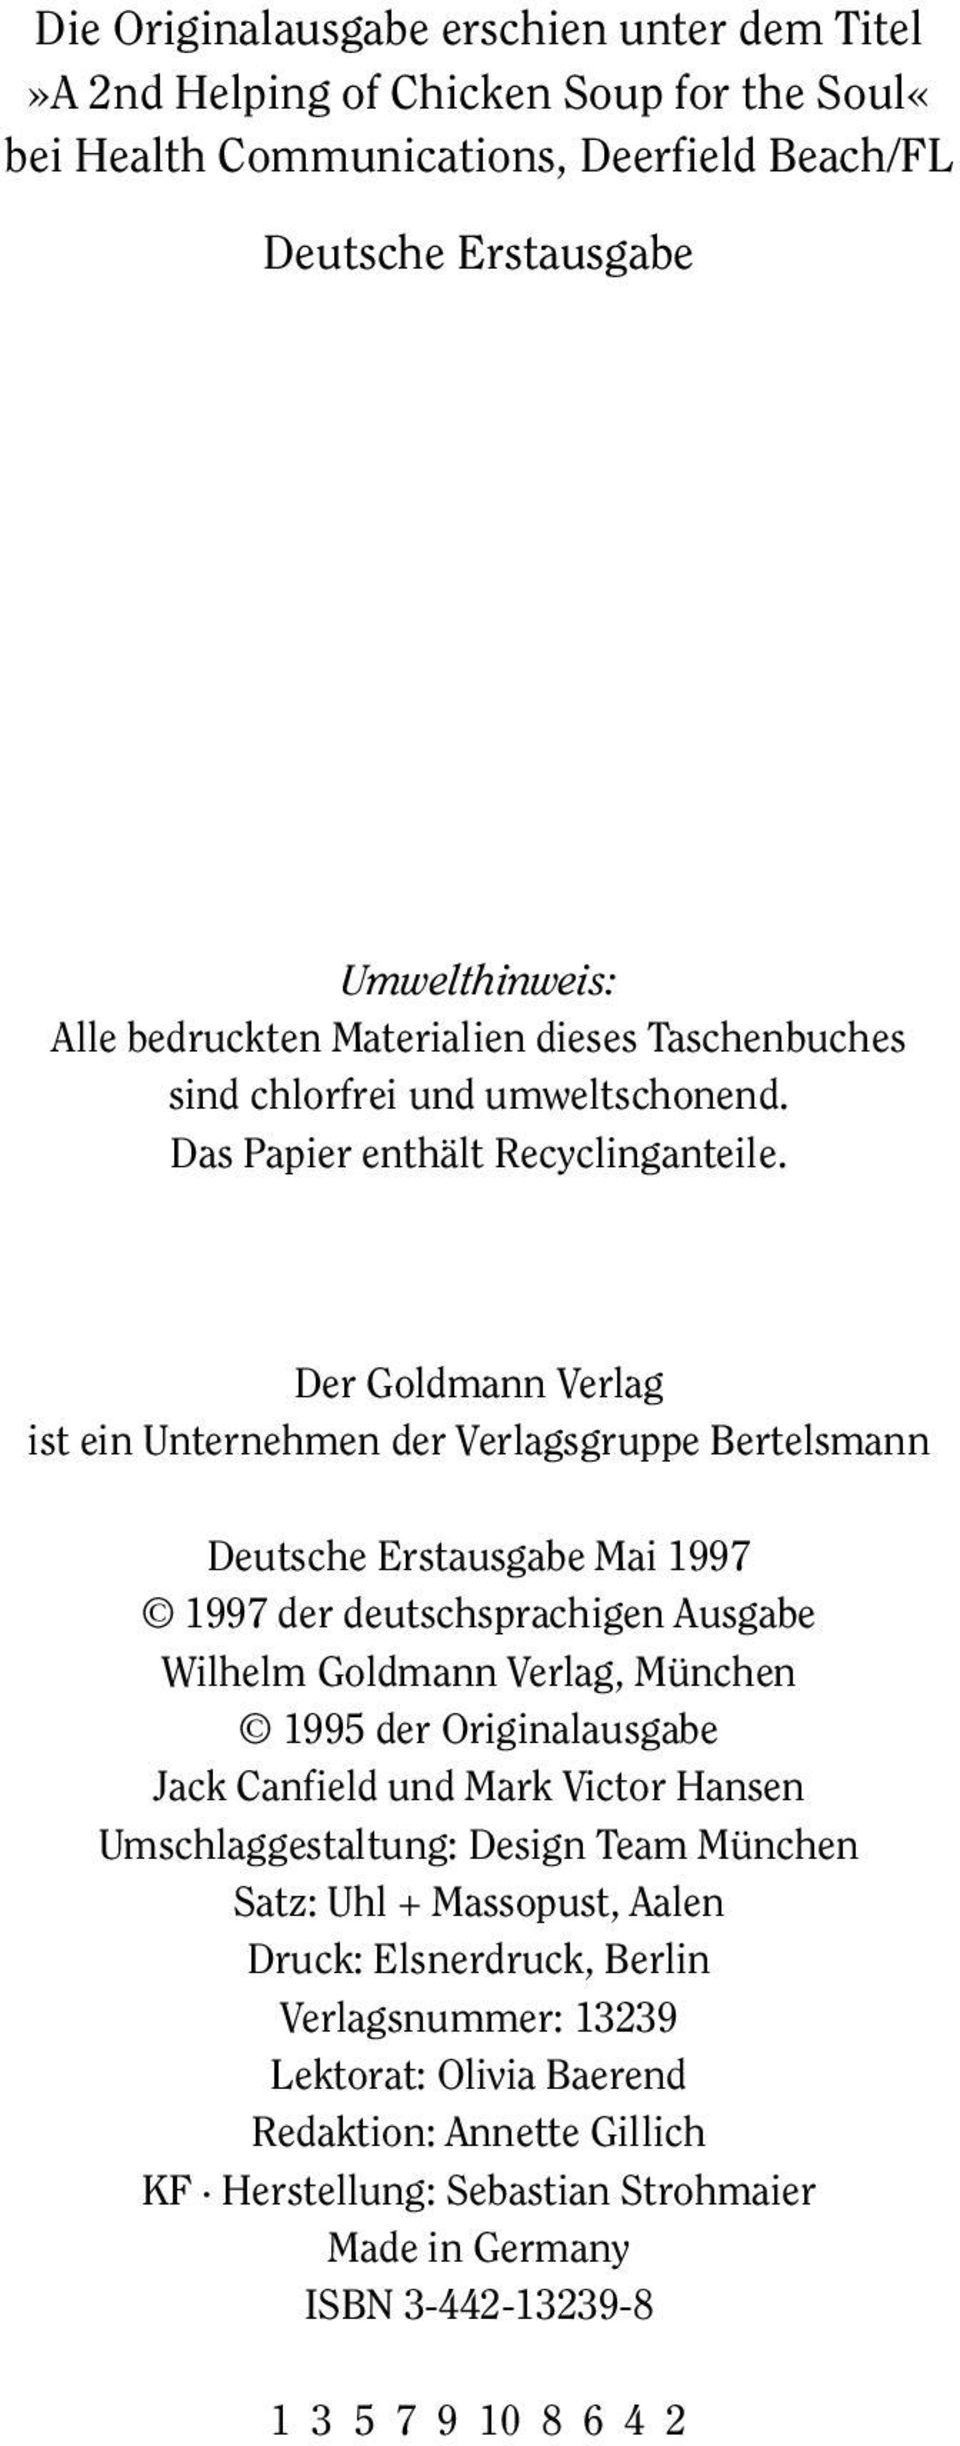 Der Goldmann Verlag ist ein Unternehmen der Verlagsgruppe Bertelsmann Deutsche Erstausgabe Mai 1997 1997 der deutschsprachigen Ausgabe Wilhelm Goldmann Verlag, München 1995 der Originalausgabe